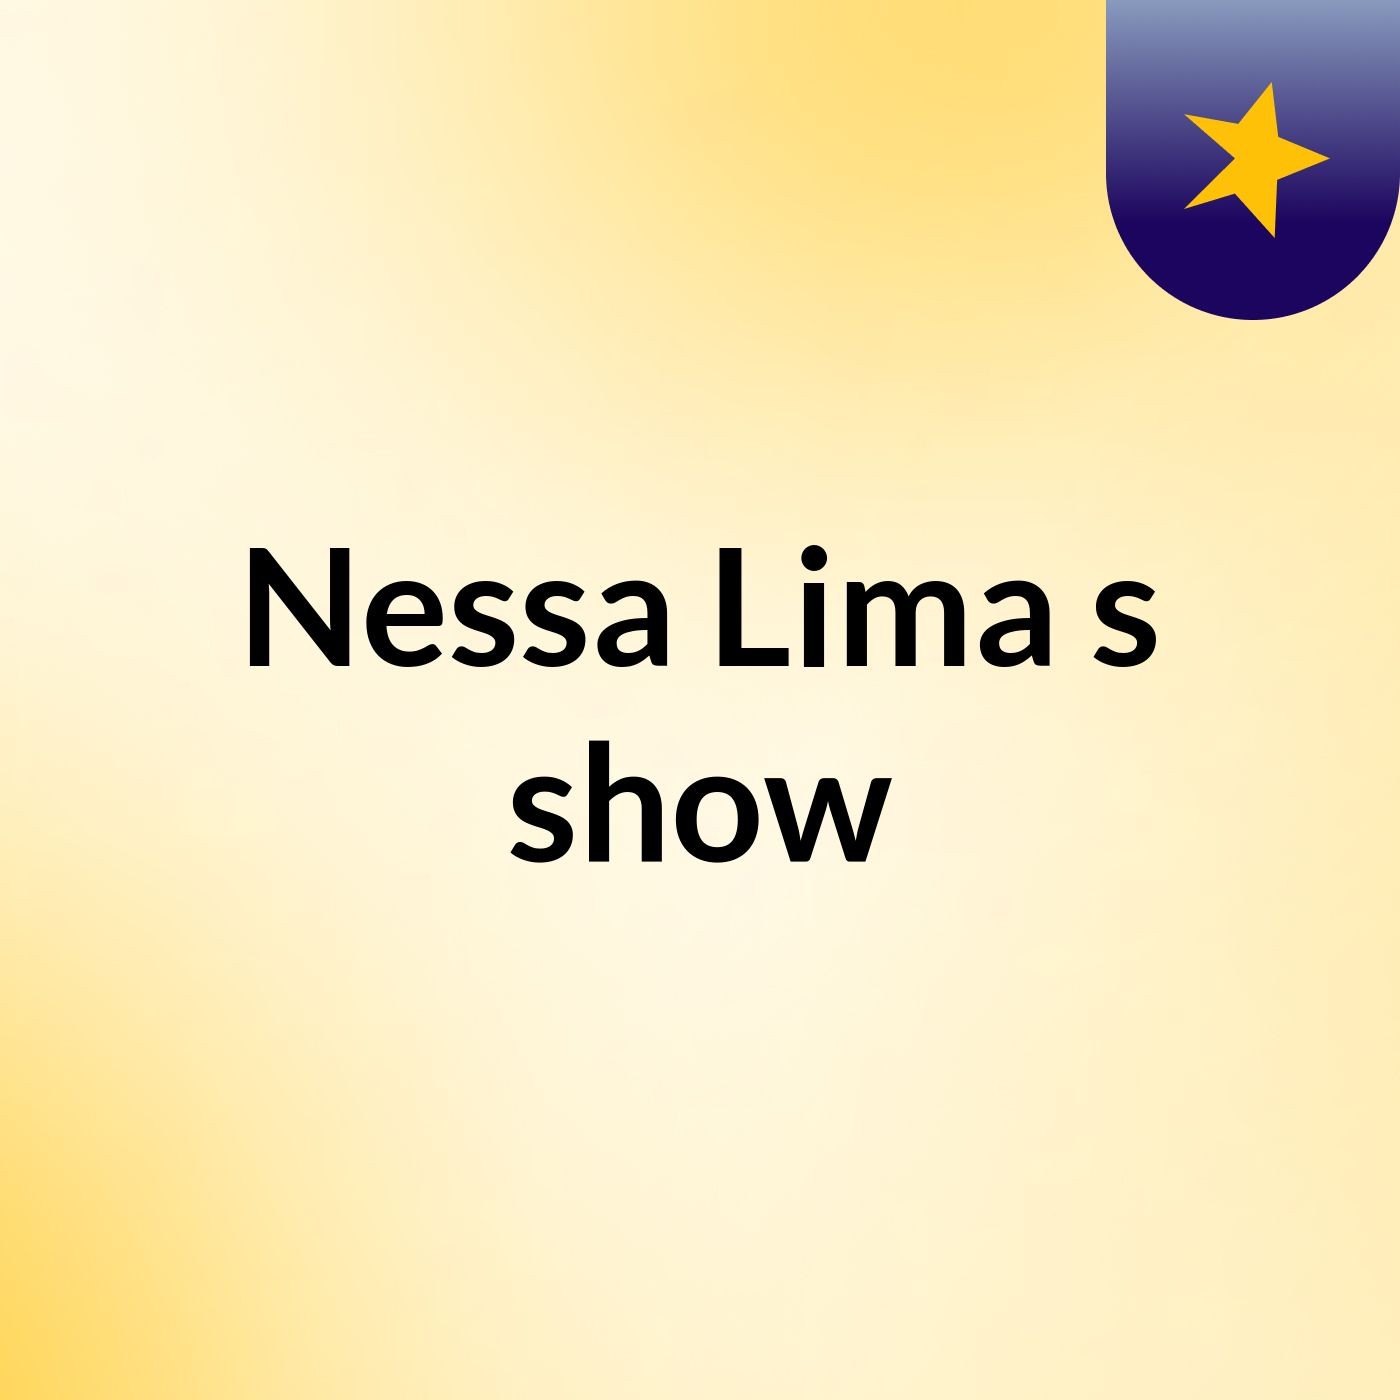 Nessa Lima's show